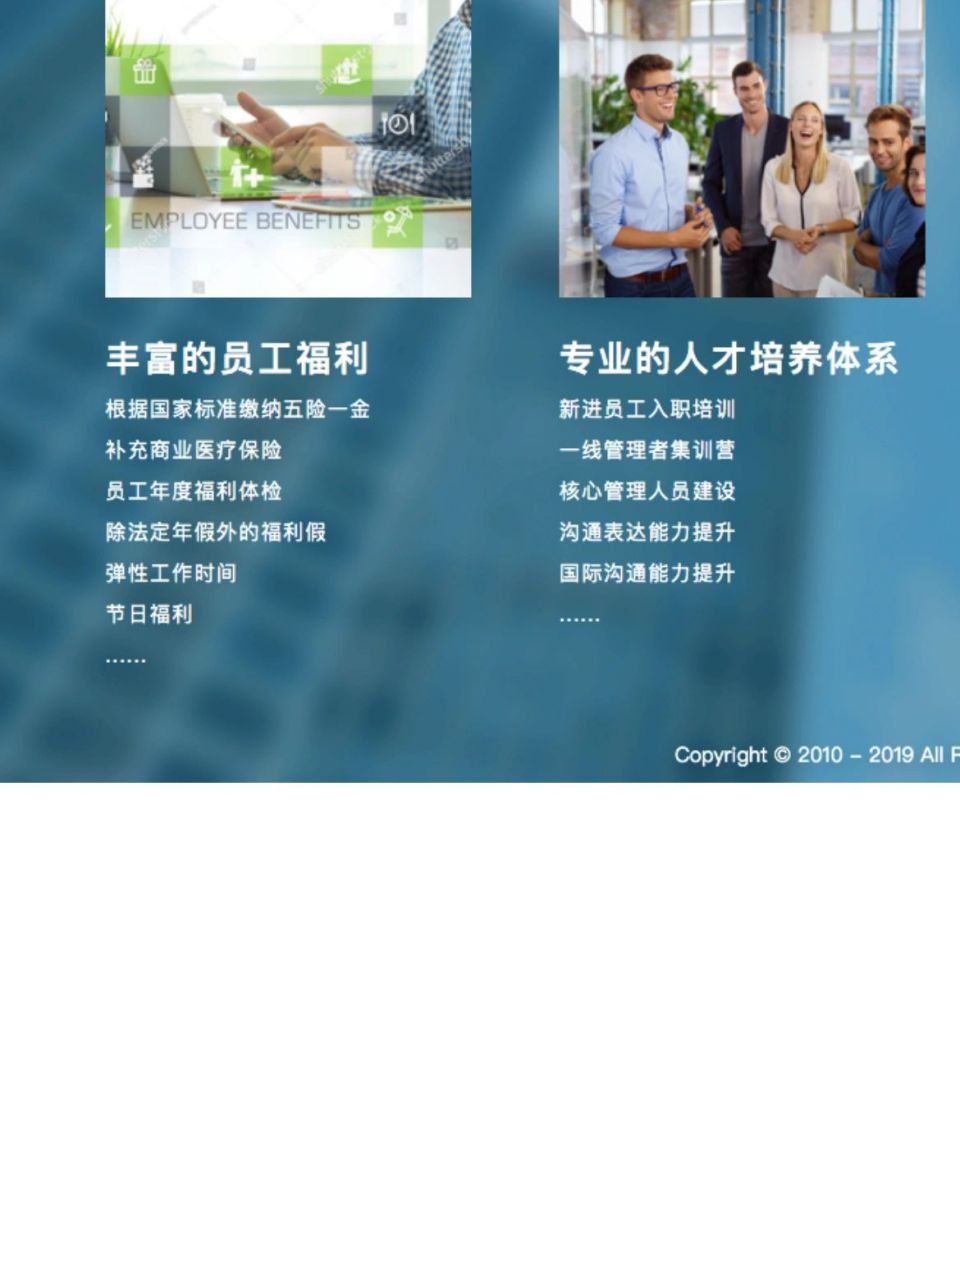 上海微创软件图片